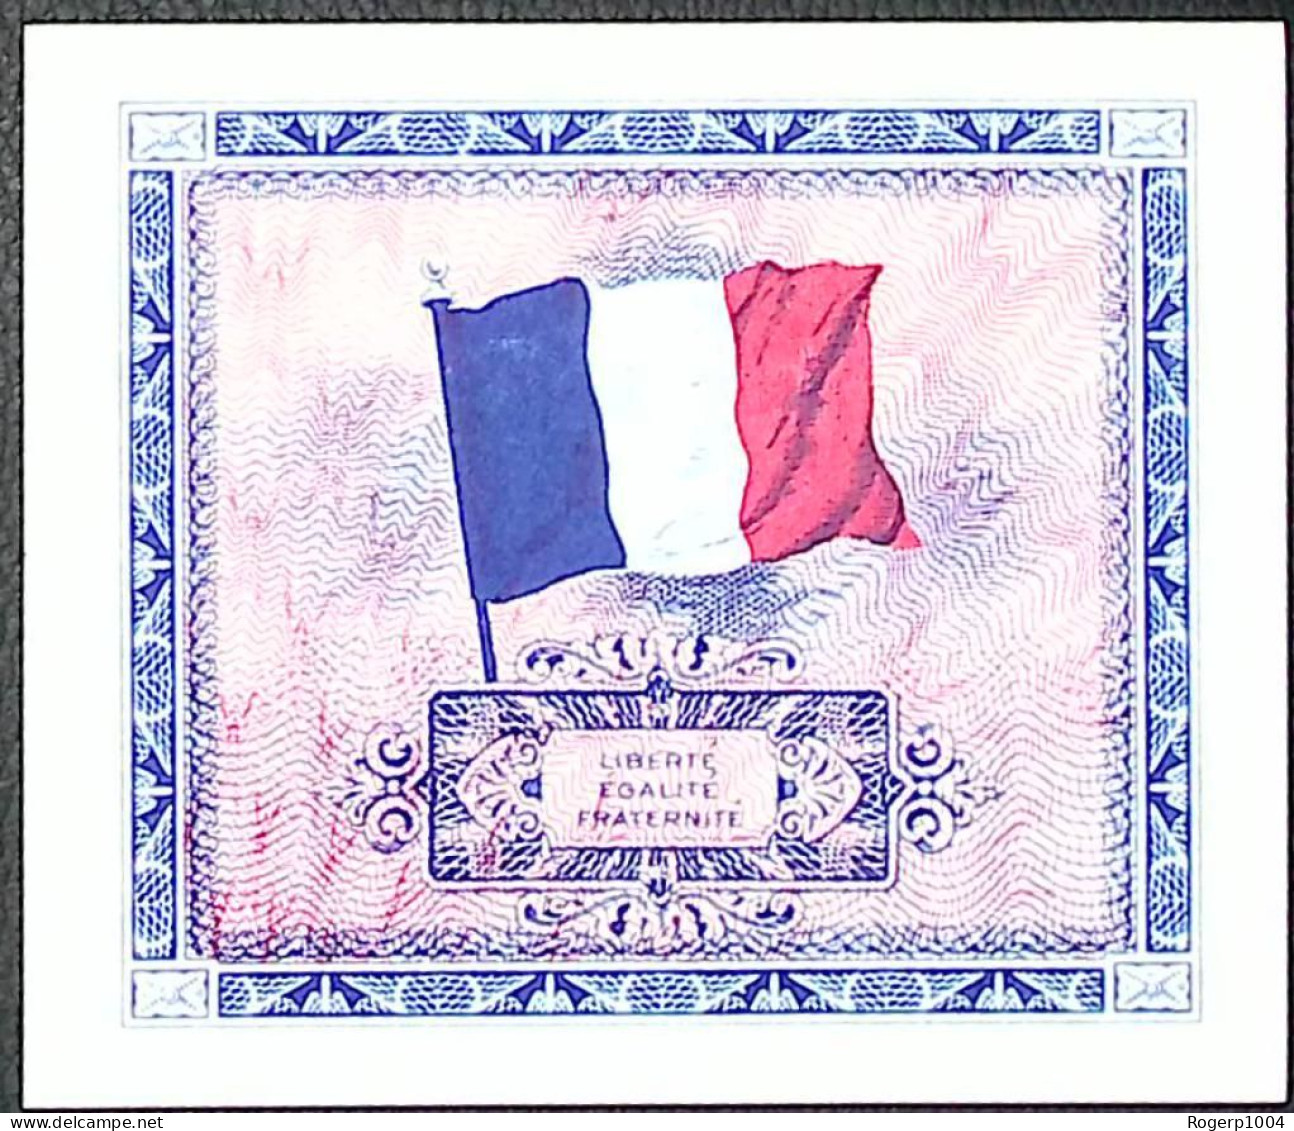 FRANCE * Billets Du Trésor * 5 Francs Drapeau * 1944 * Sans Série * Etat/Grade NEUF/UNC - 1944 Flagge/Frankreich